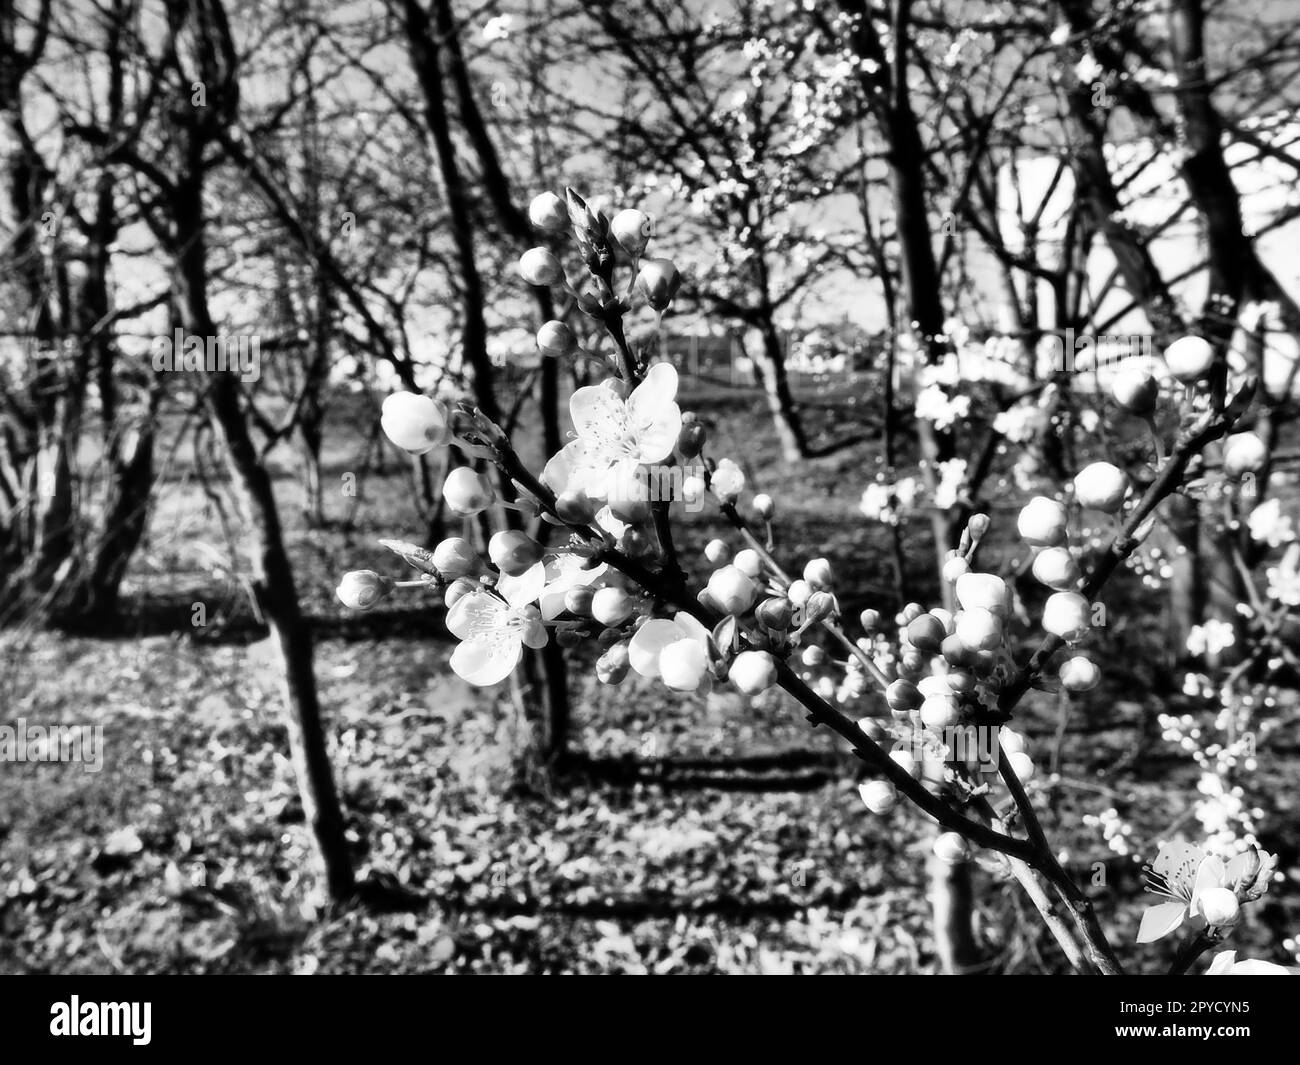 Un arbre fleurissant avec des fleurs blanches. Cerise, pomme, prune ou cerise douce en état de floraison. Pétales blancs délicats. Carte postale. Félicitations pour le jour du printemps, joyeuse fête des mères. Noir et blanc Banque D'Images